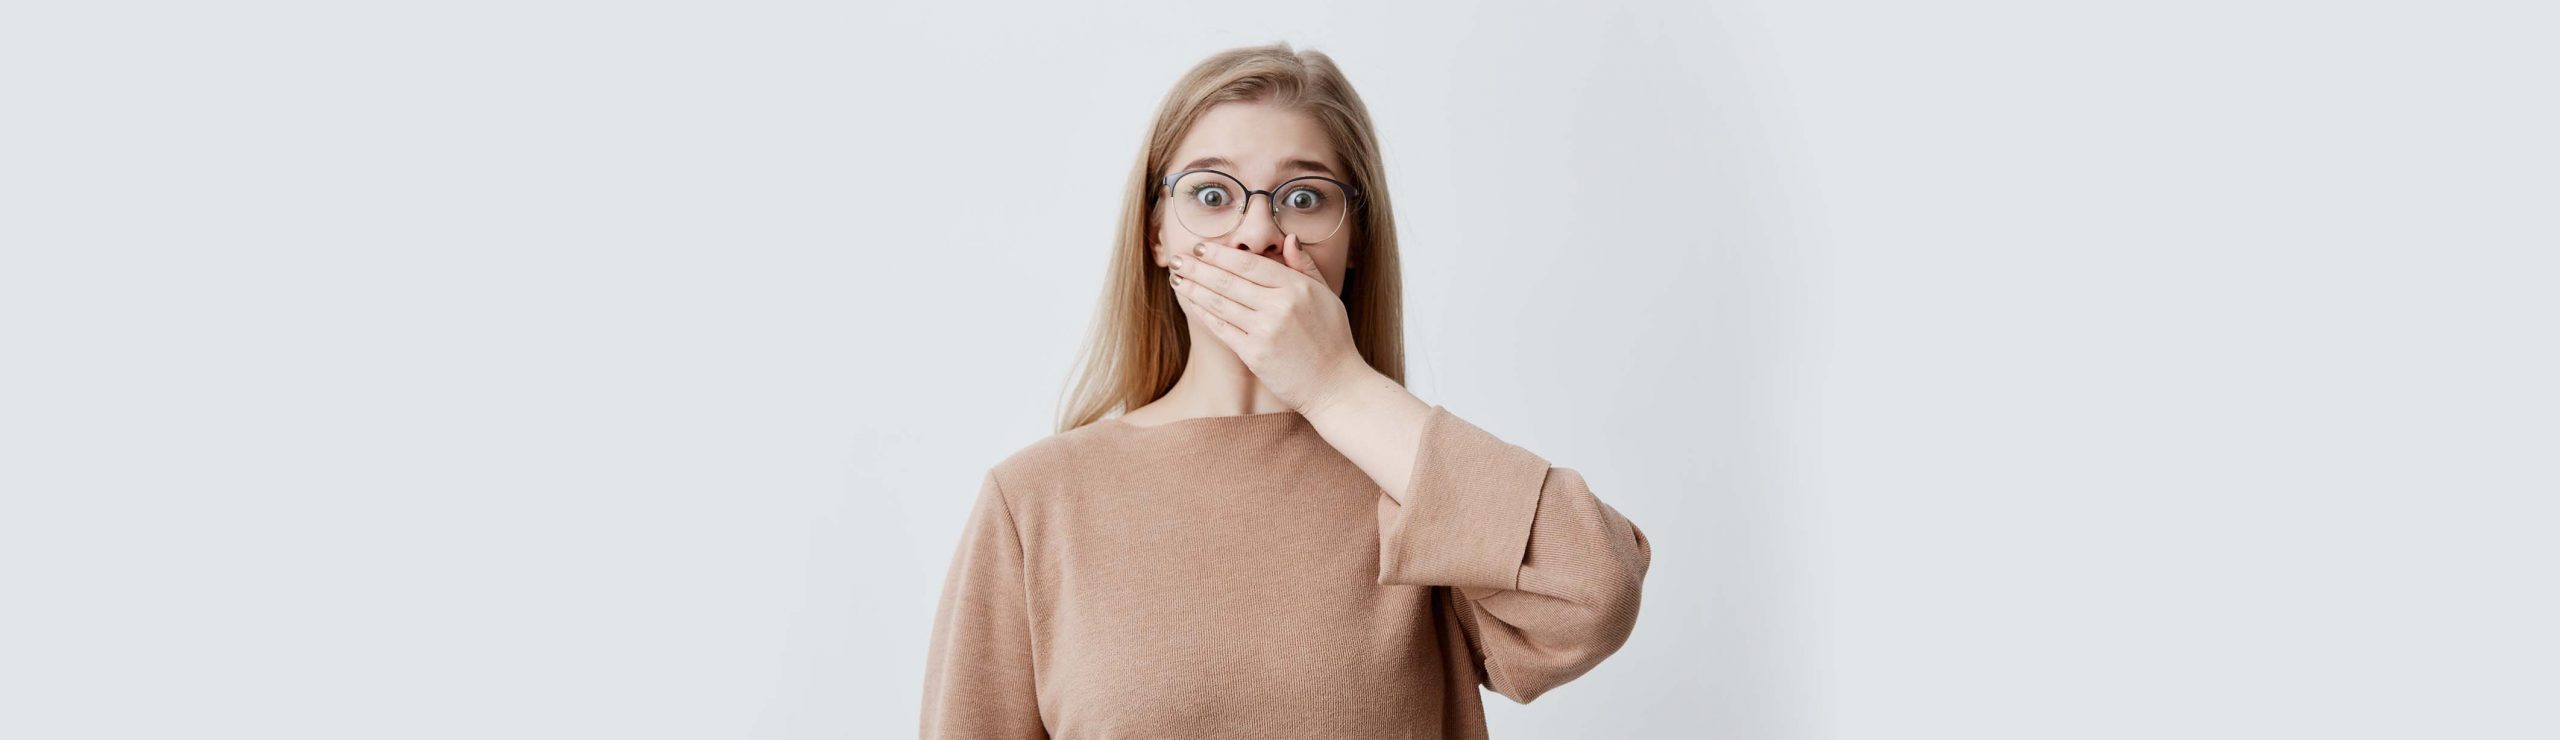 8 mitos e verdades sobre o mau hálito